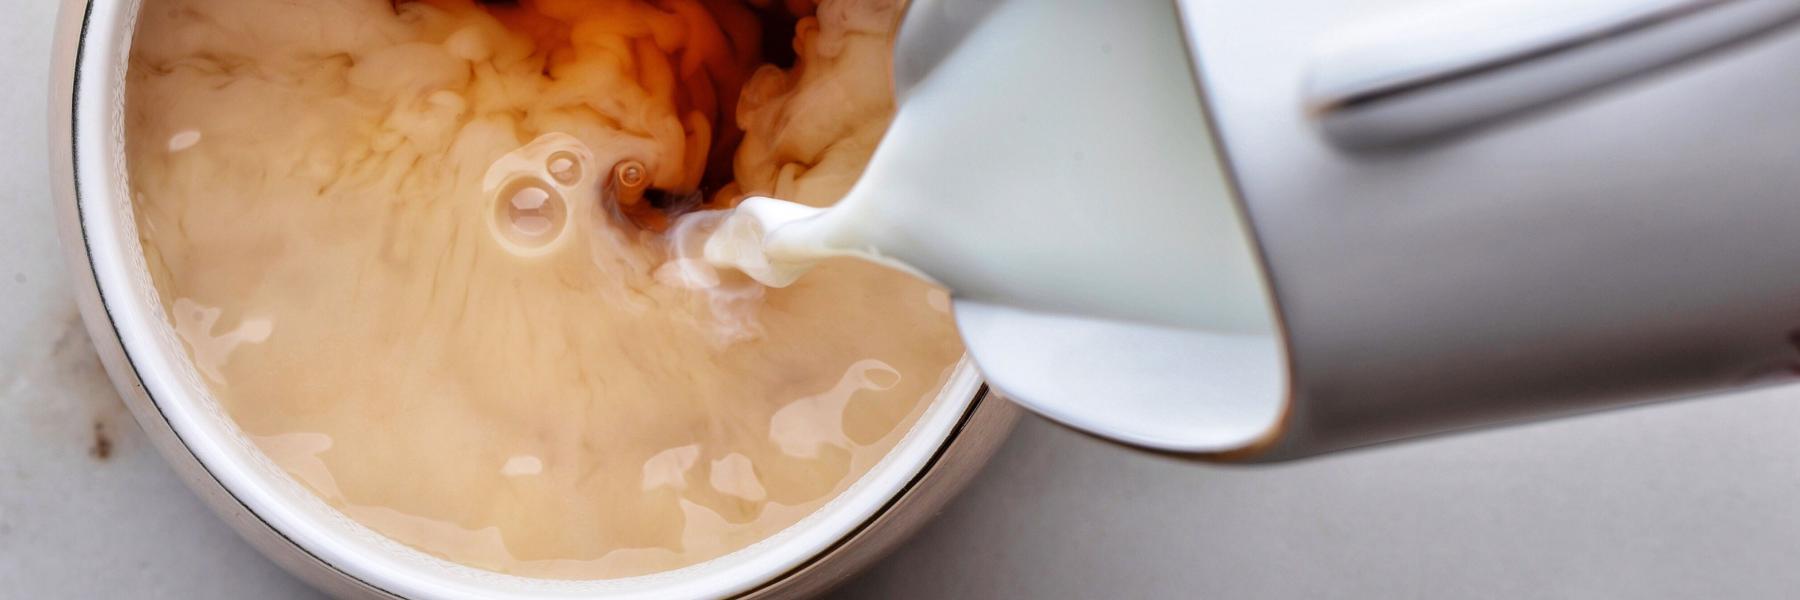 دراسة تكشف أهمية وضع الحليب على الشاي قبل الماء